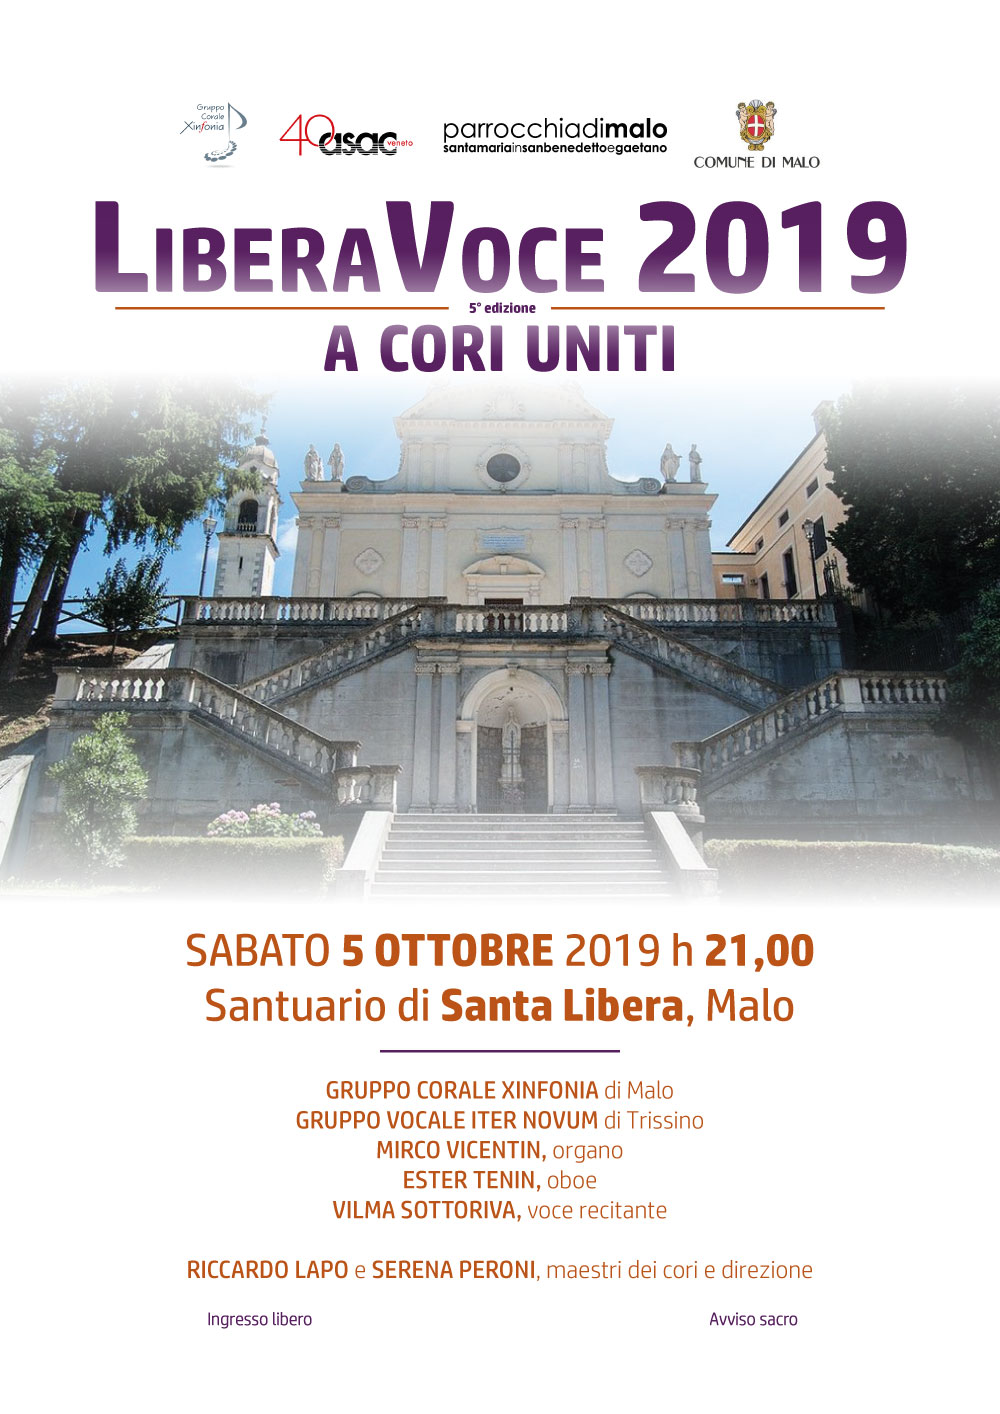 LiberaVoce 2019. 5ª edizione. A cori uniti